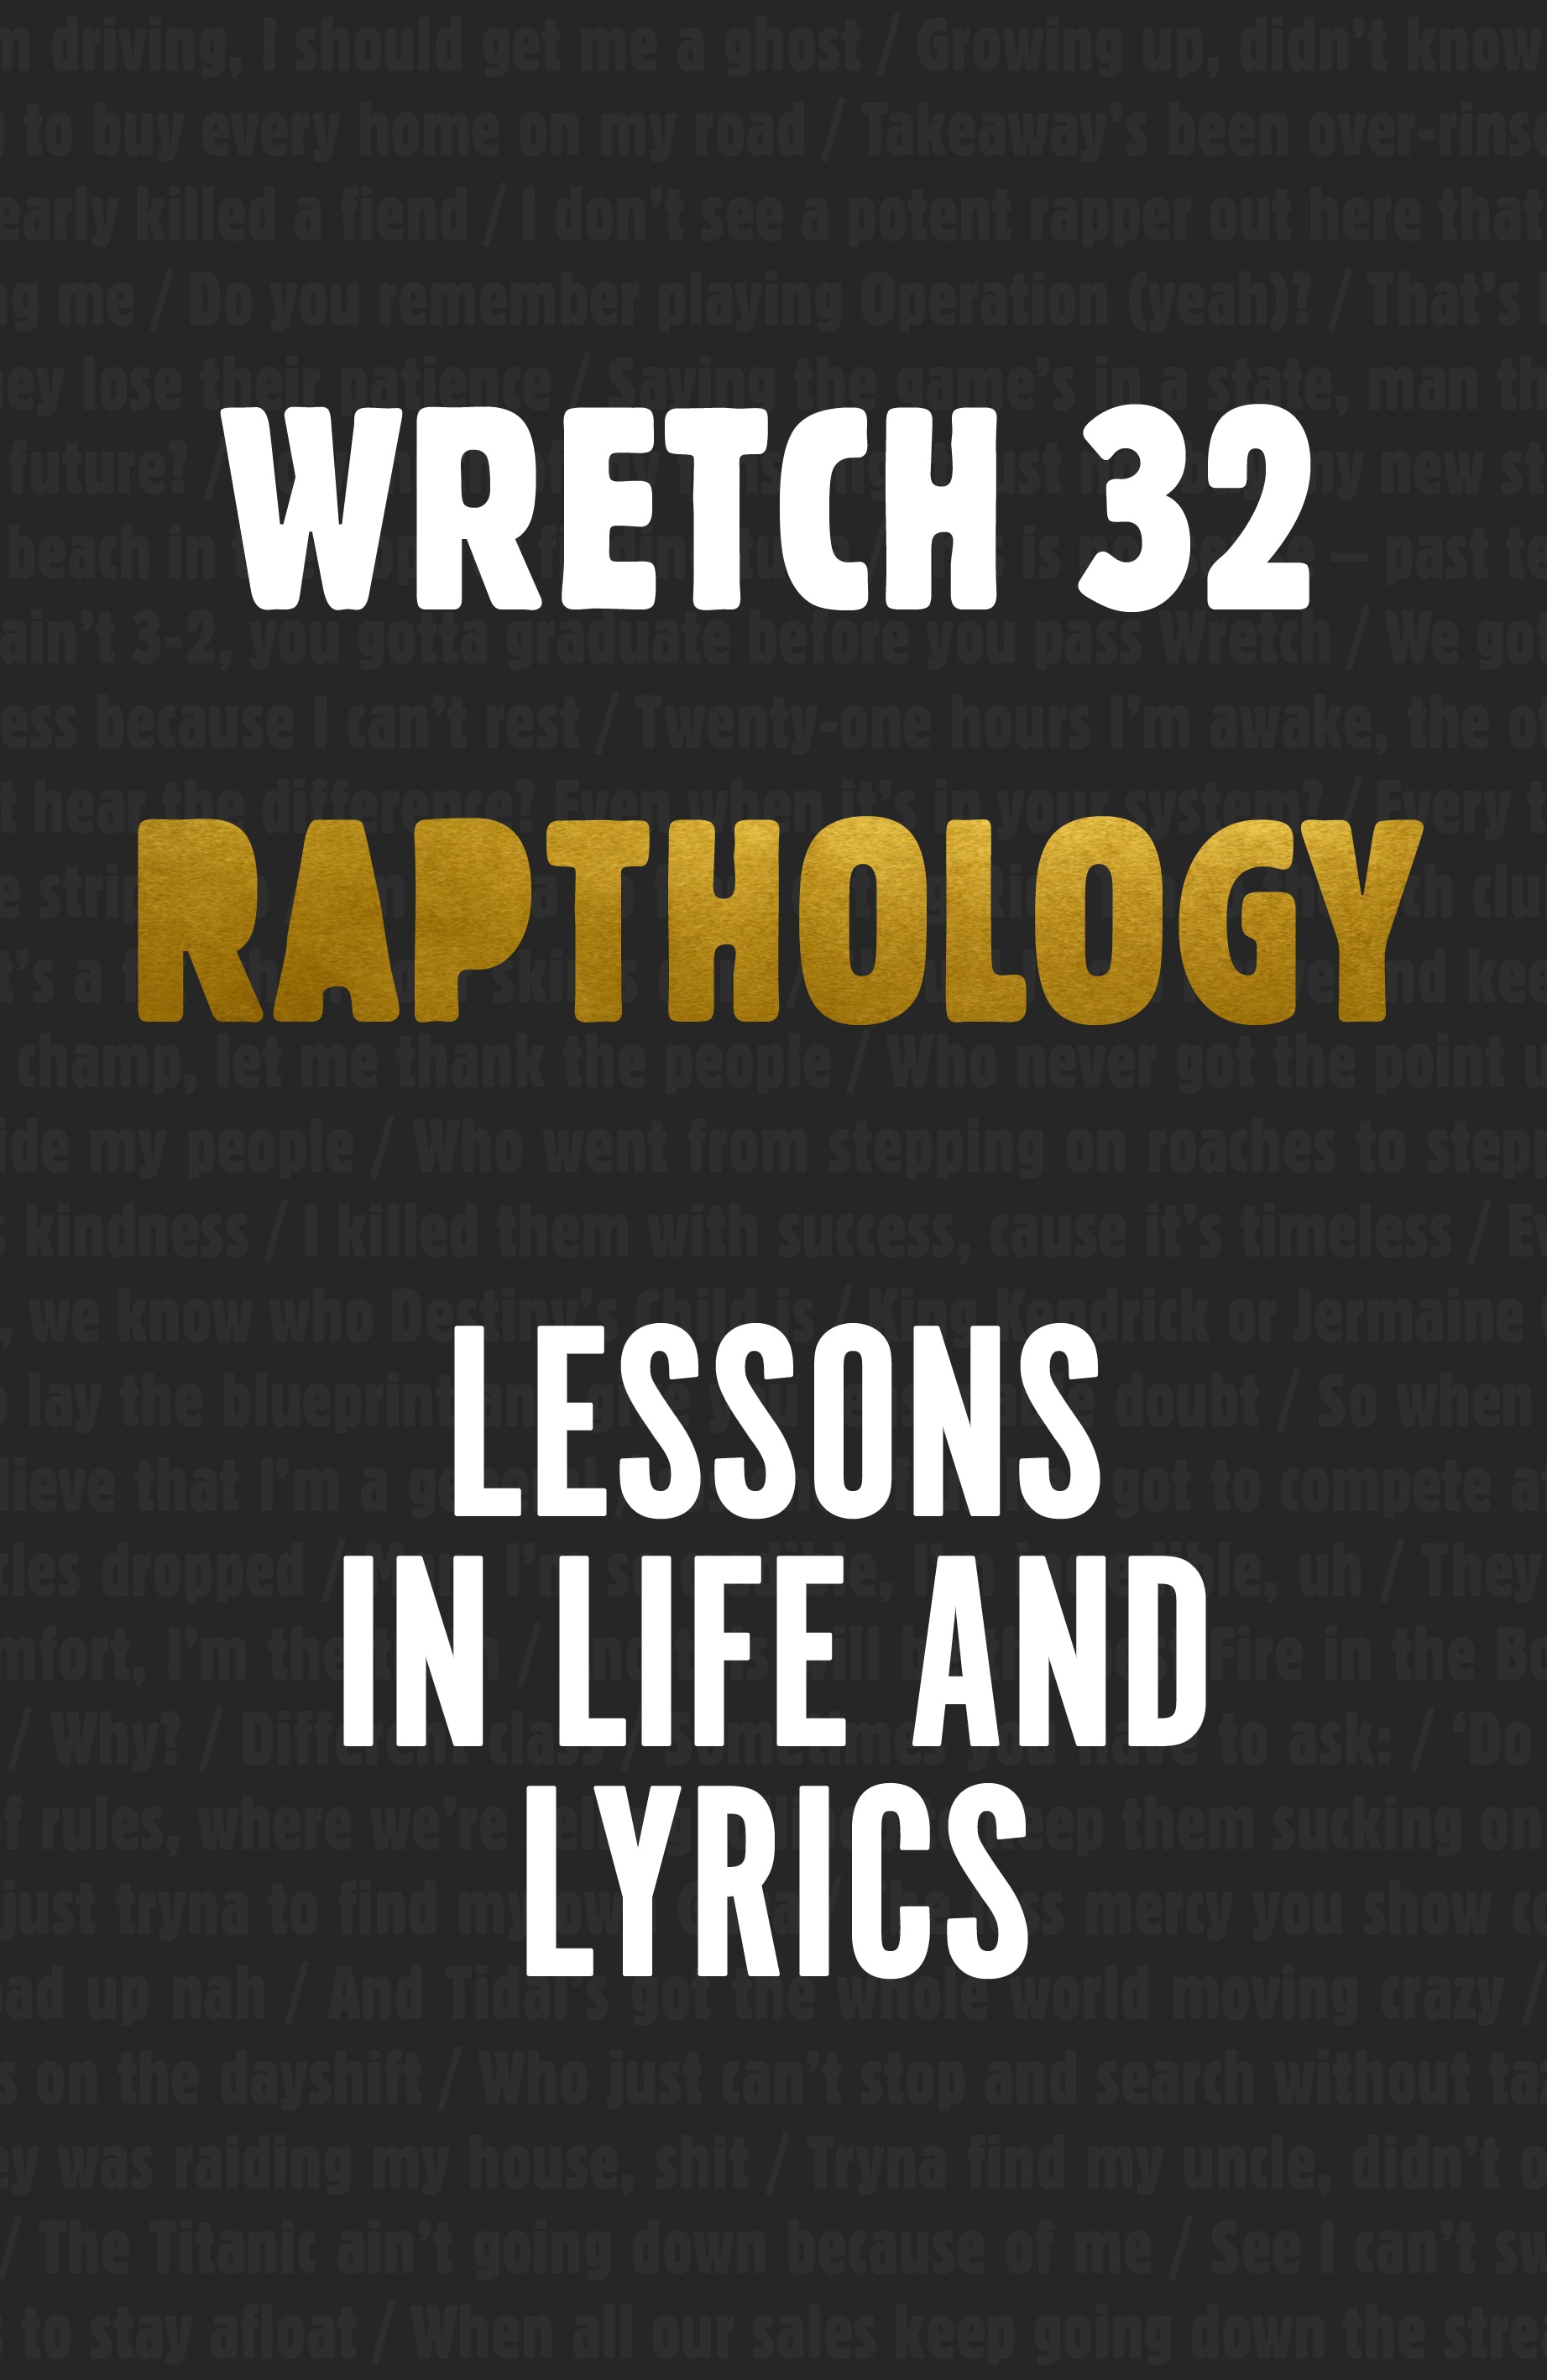 Book “Rapthology” by Jermaine Scott a.k.a. Wretch 32 — November 21, 2019